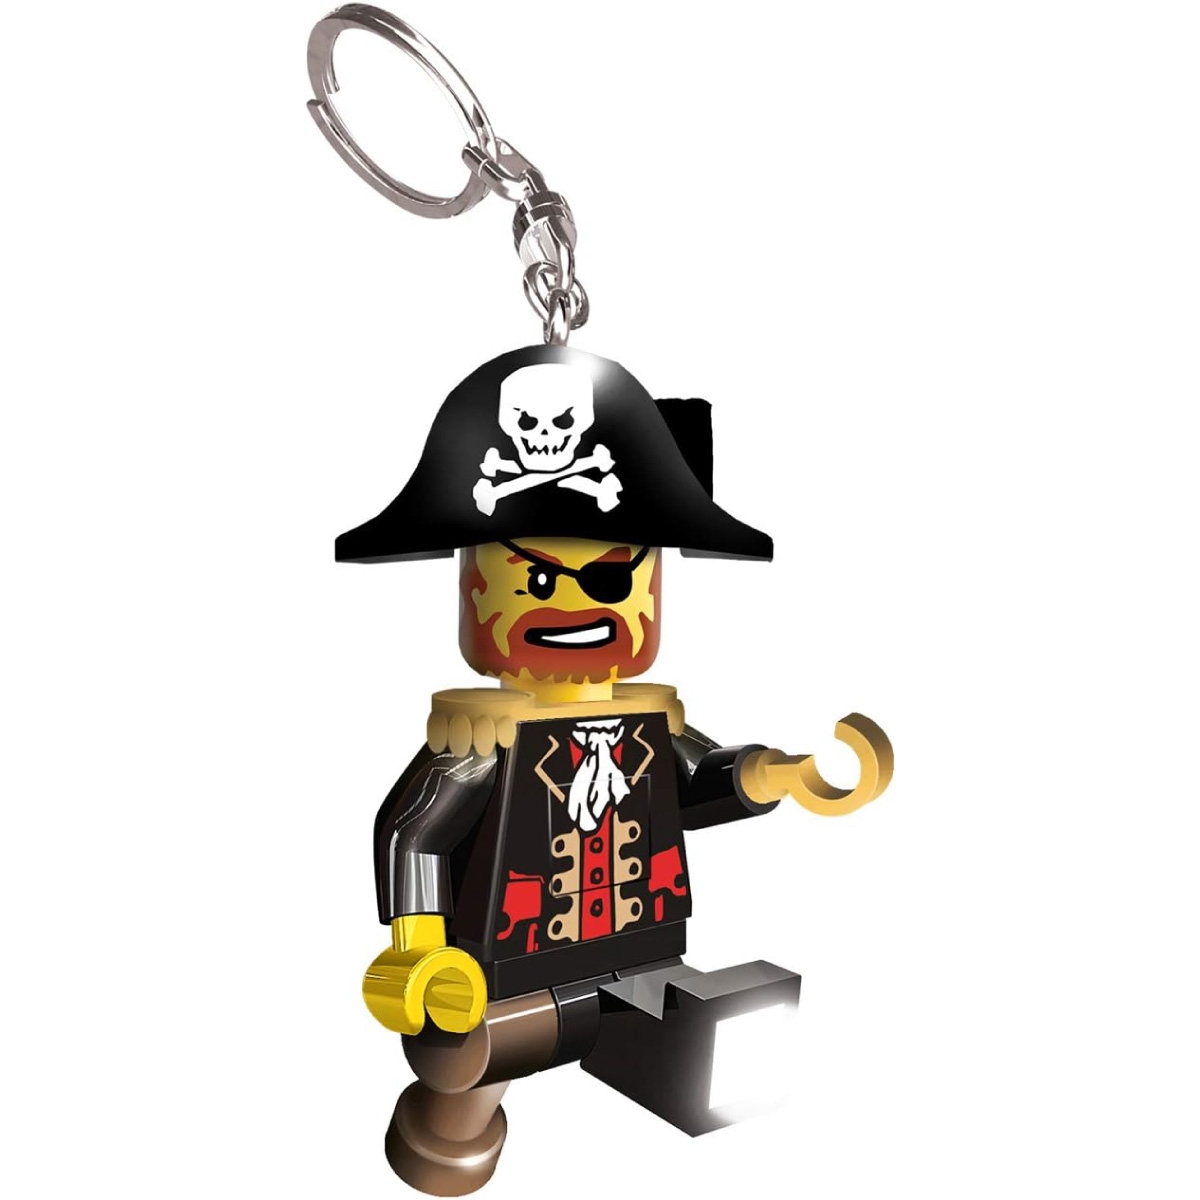 LEGO Lgl-ke23 - Capitano Pirata - Portachiavi Con Torcia Led a 12